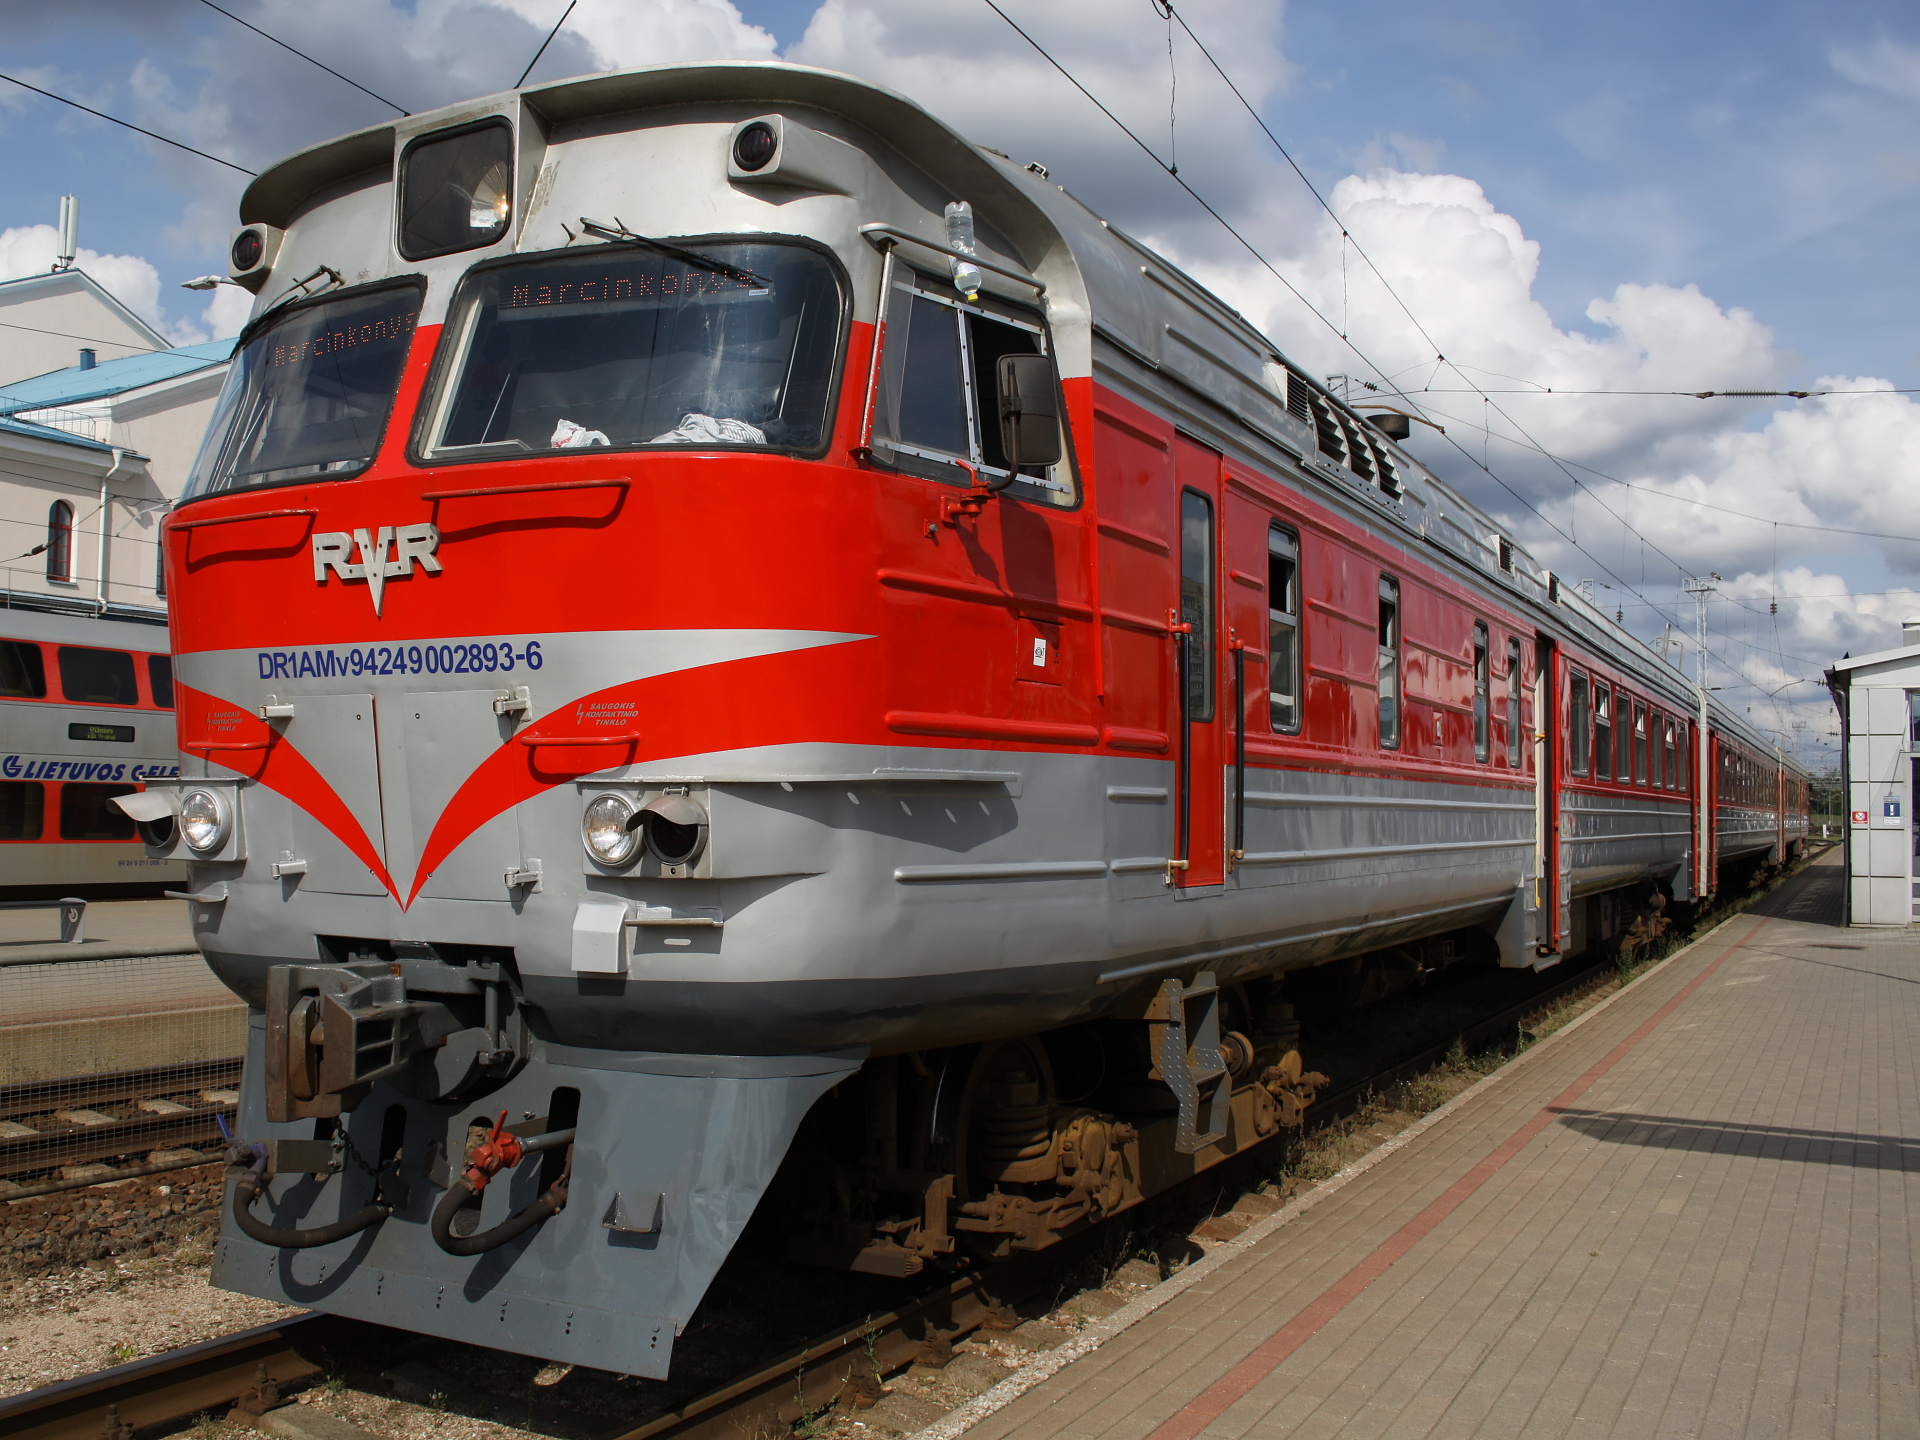 RVR DR1AM 893 (Podróże » Wilno » Pojazdy » Pociągi i lokomotywy)